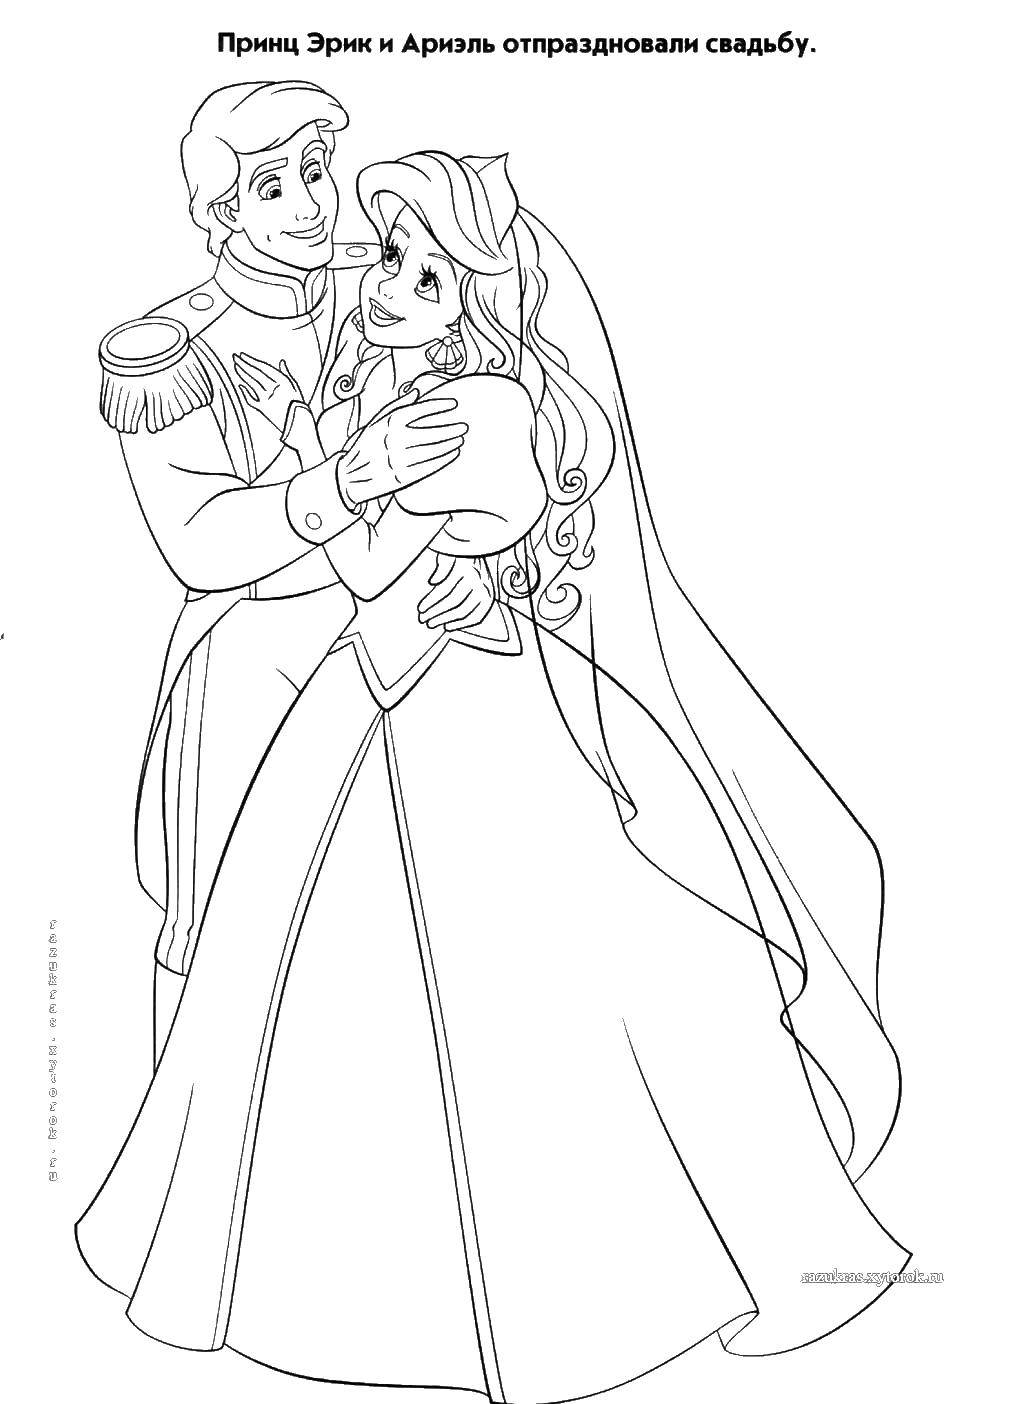 Название: Раскраска Свадьба принца эрика и ариэль. Категория: свадьба. Теги: свадьба, жених, невеста, принц Эрик, Ариэль.